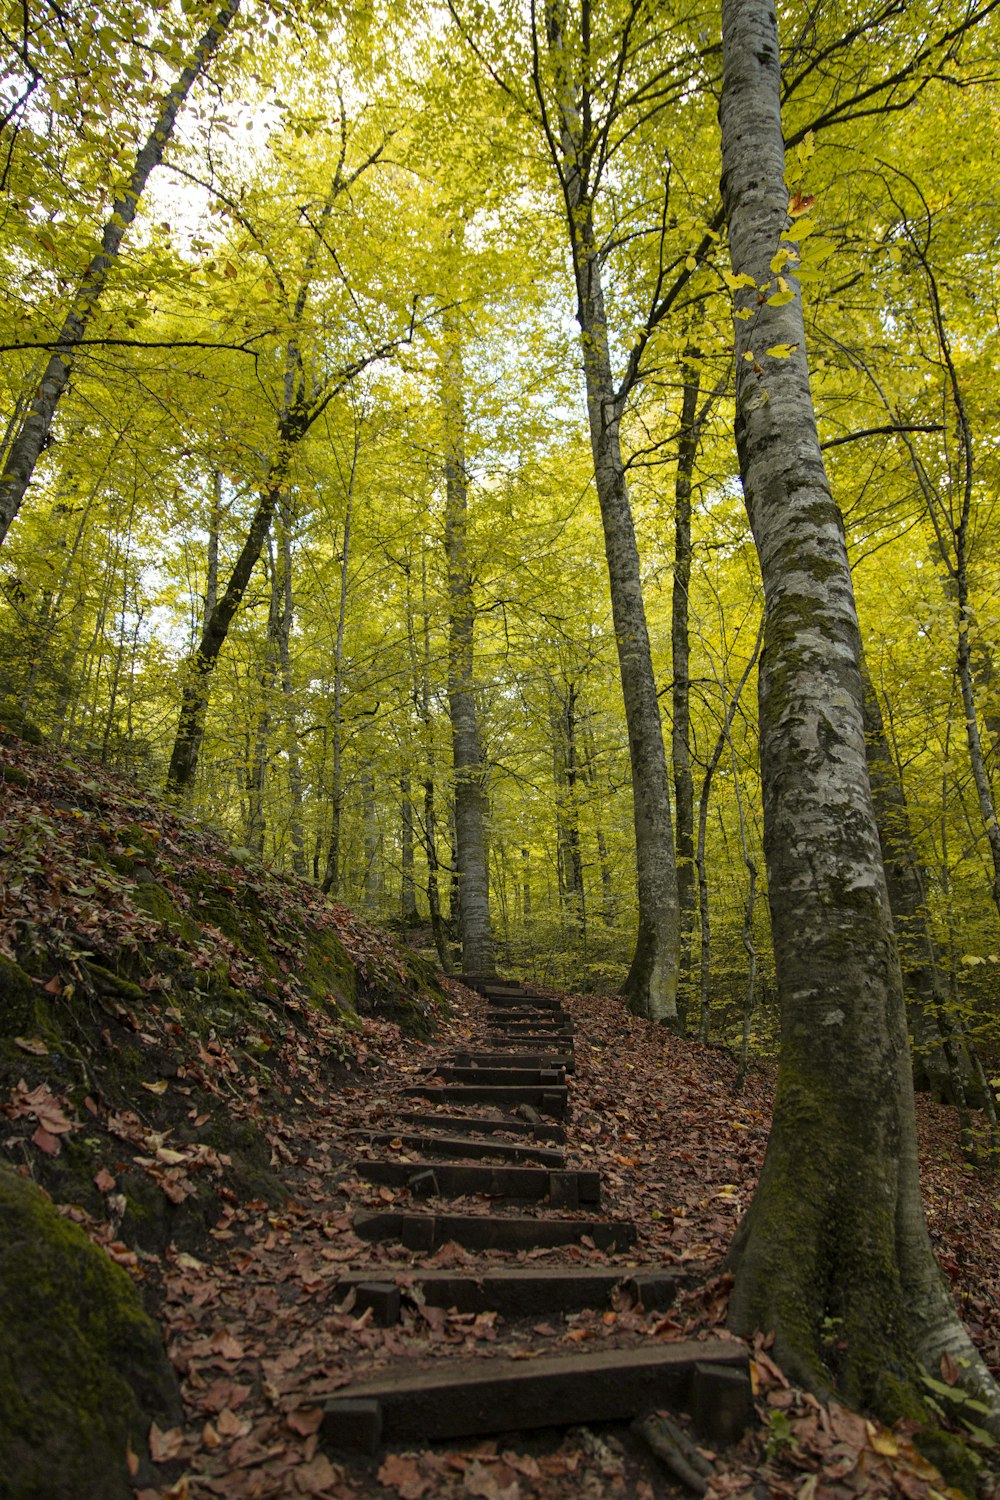 Escaliers en béton brun entre des arbres verts pendant la journée